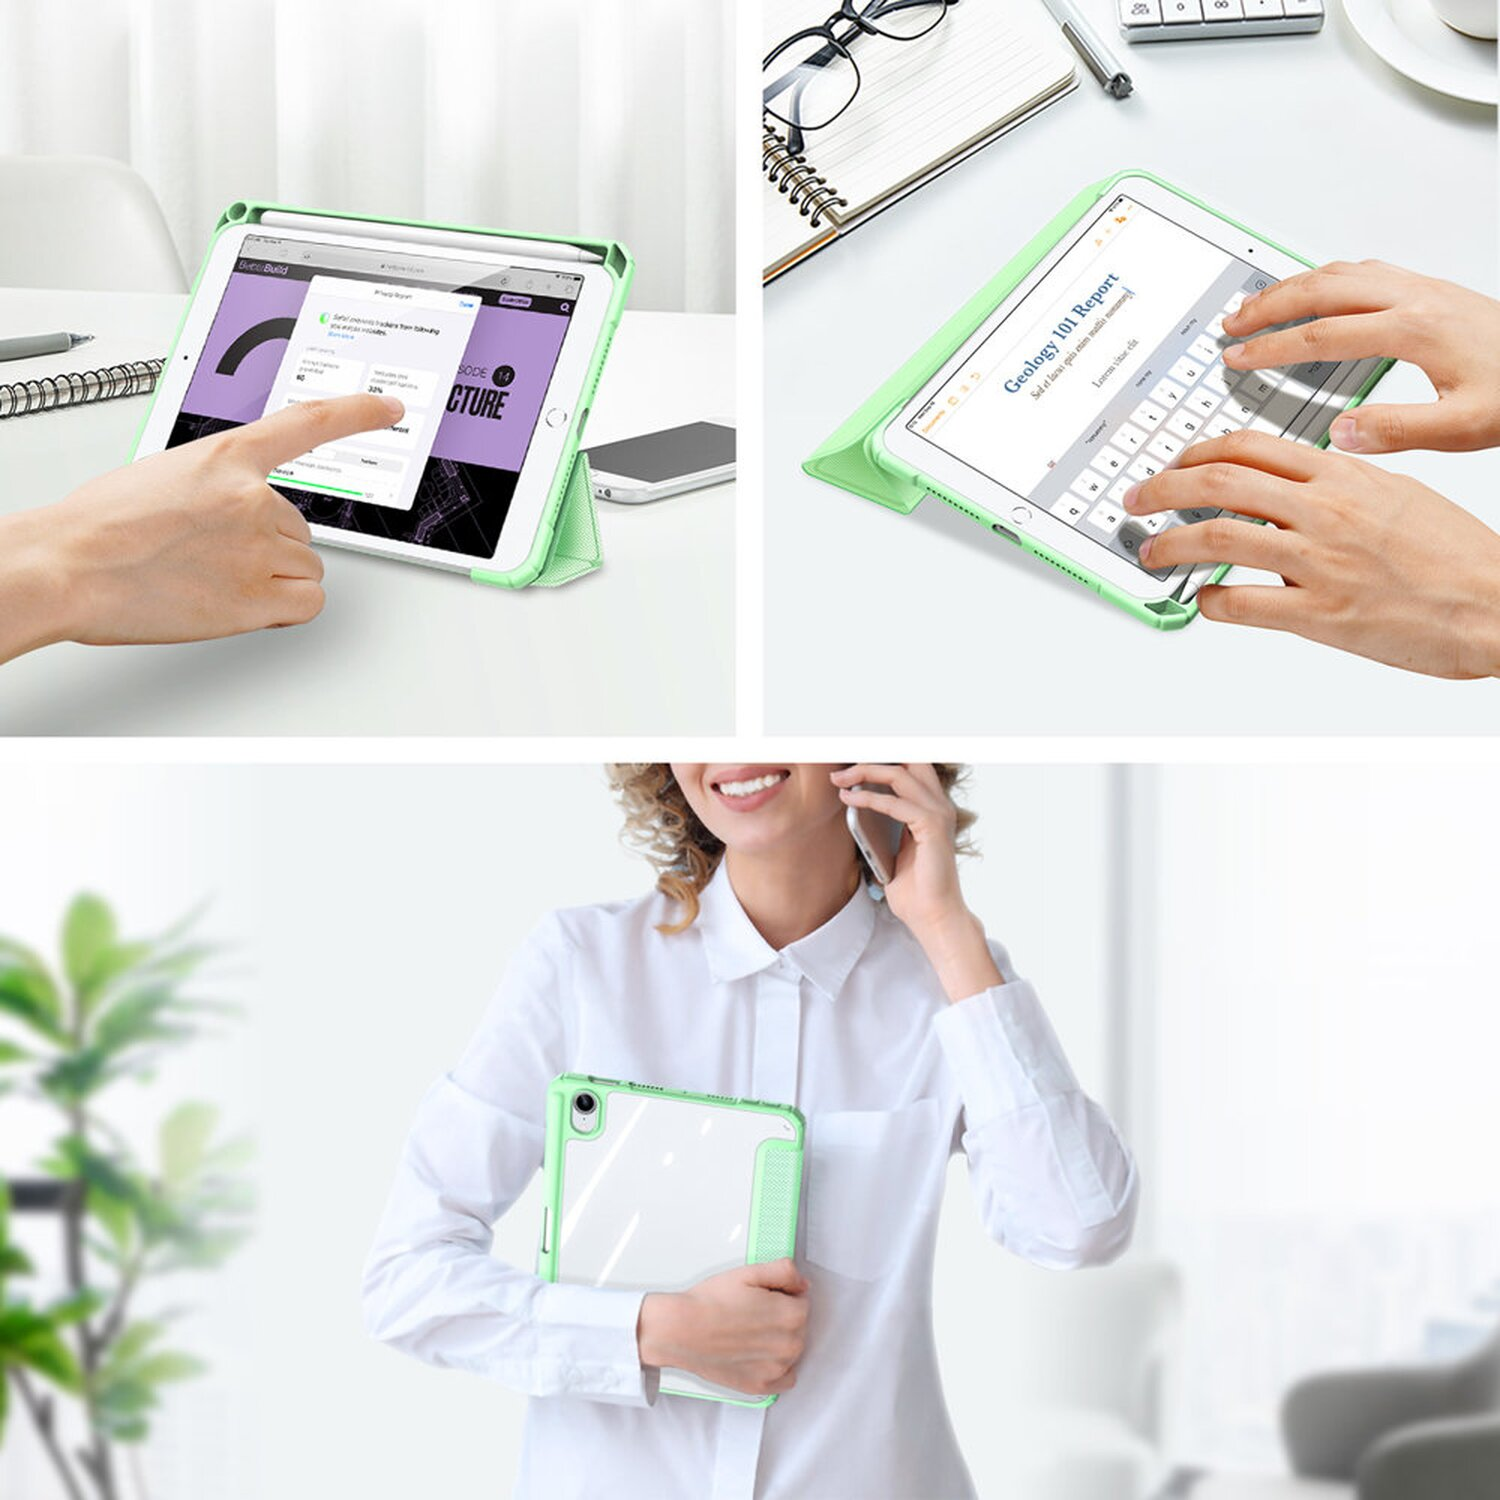 Tablethülle DUX Toby Xiaomi Eco-Leder, Pro Mi Pad 5 DUCIS Grün Bookcover für